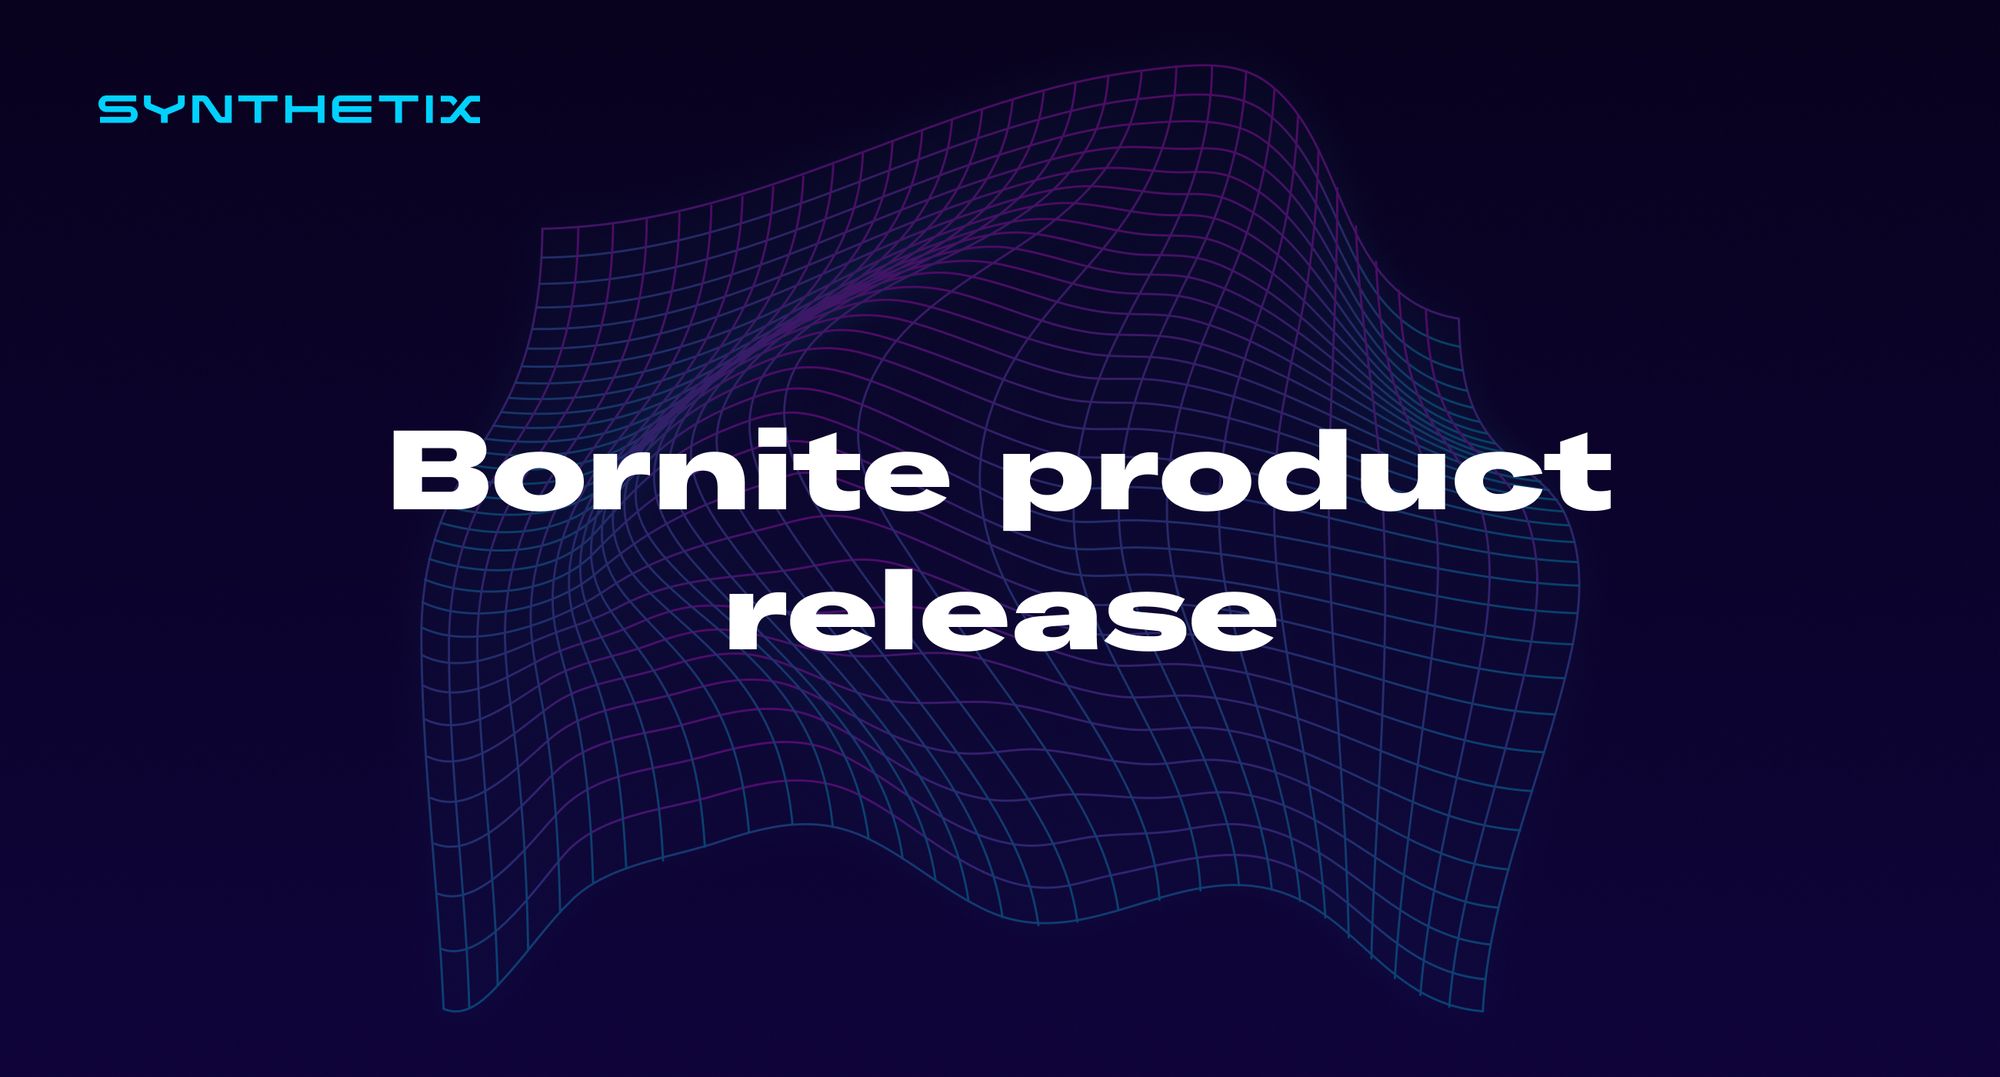 Bornite product release